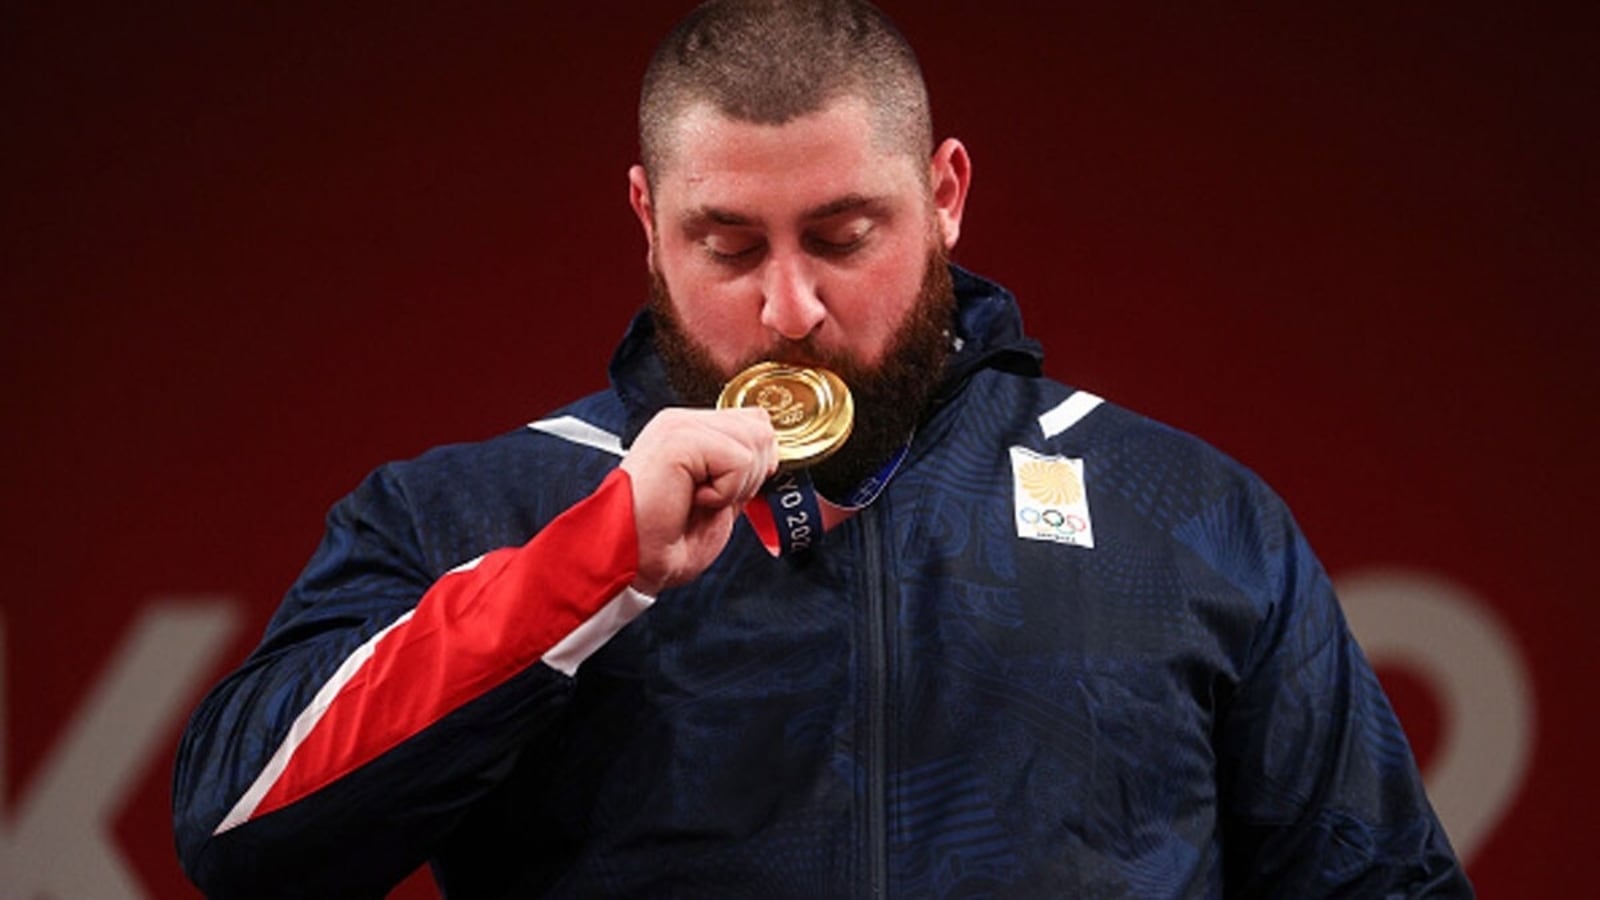 olympic winner cut medal in half